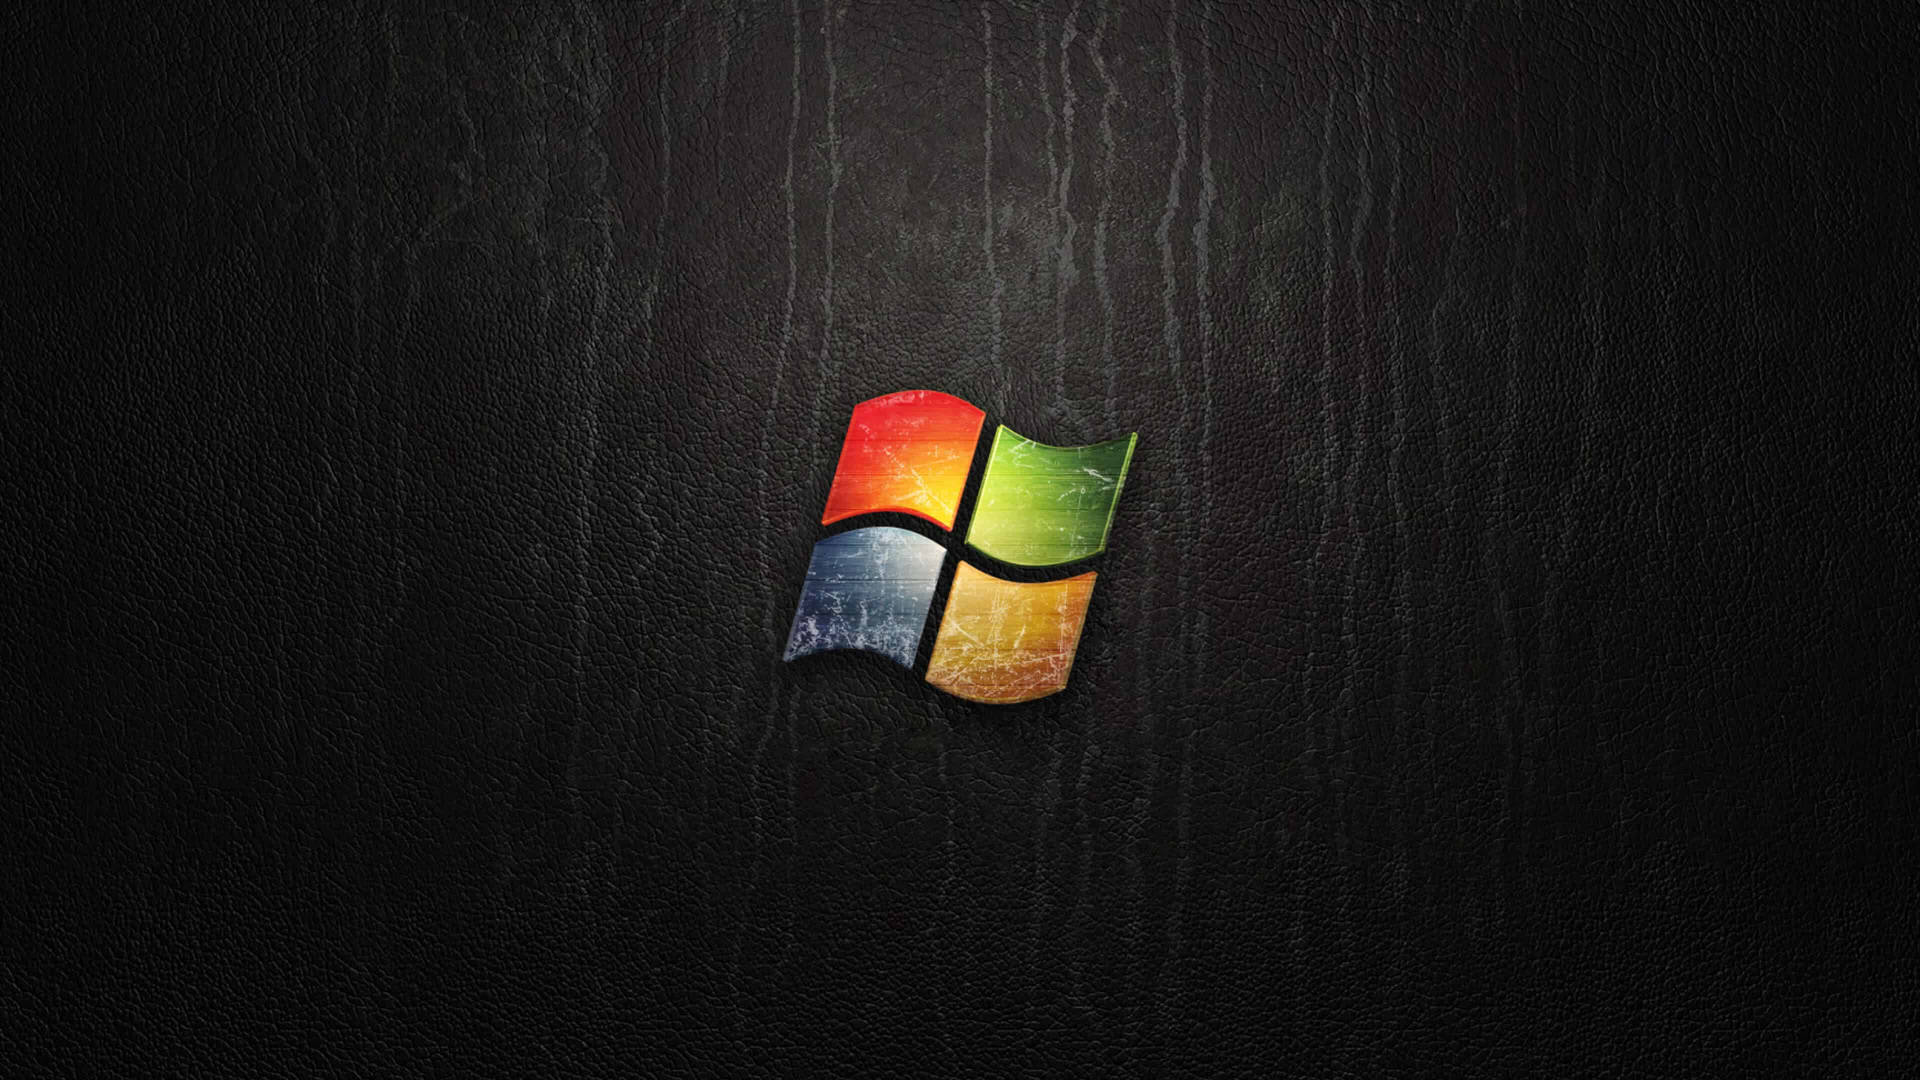 Microsoft giới thiệu bộ hình nền hoài niệm mang thập niên 90 trở lại với  người dùng Windows  Sforum